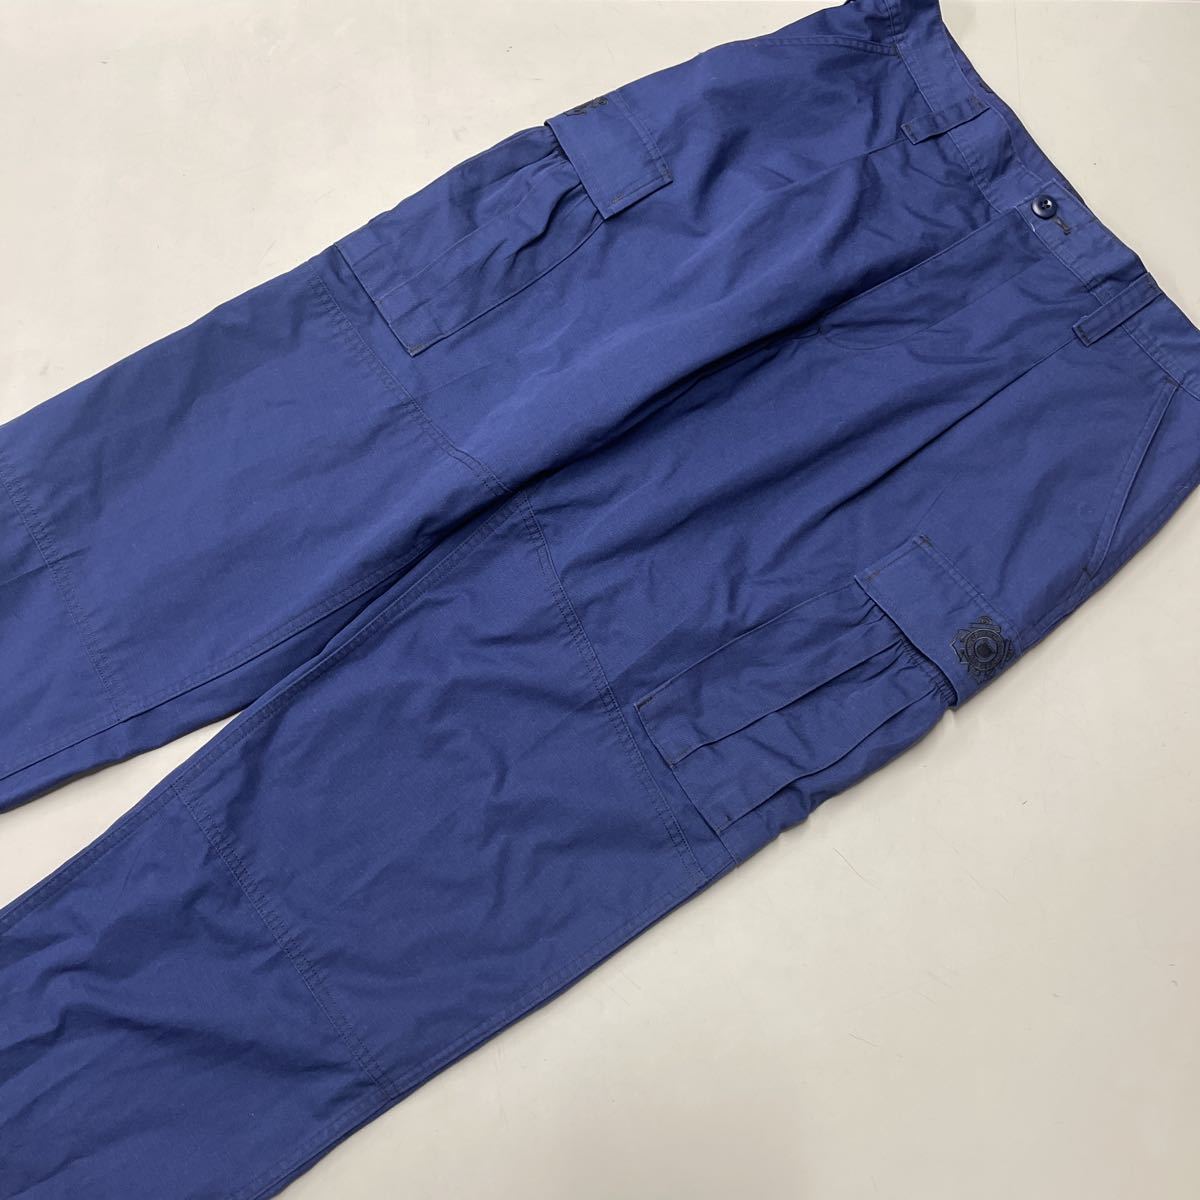 アメリカ海岸警察隊 United States Coast Guard カーゴパンツ OPERATIONAL DRESS UNIFORM pants ネイビー 美品 リップストップ メンズ w34_画像1